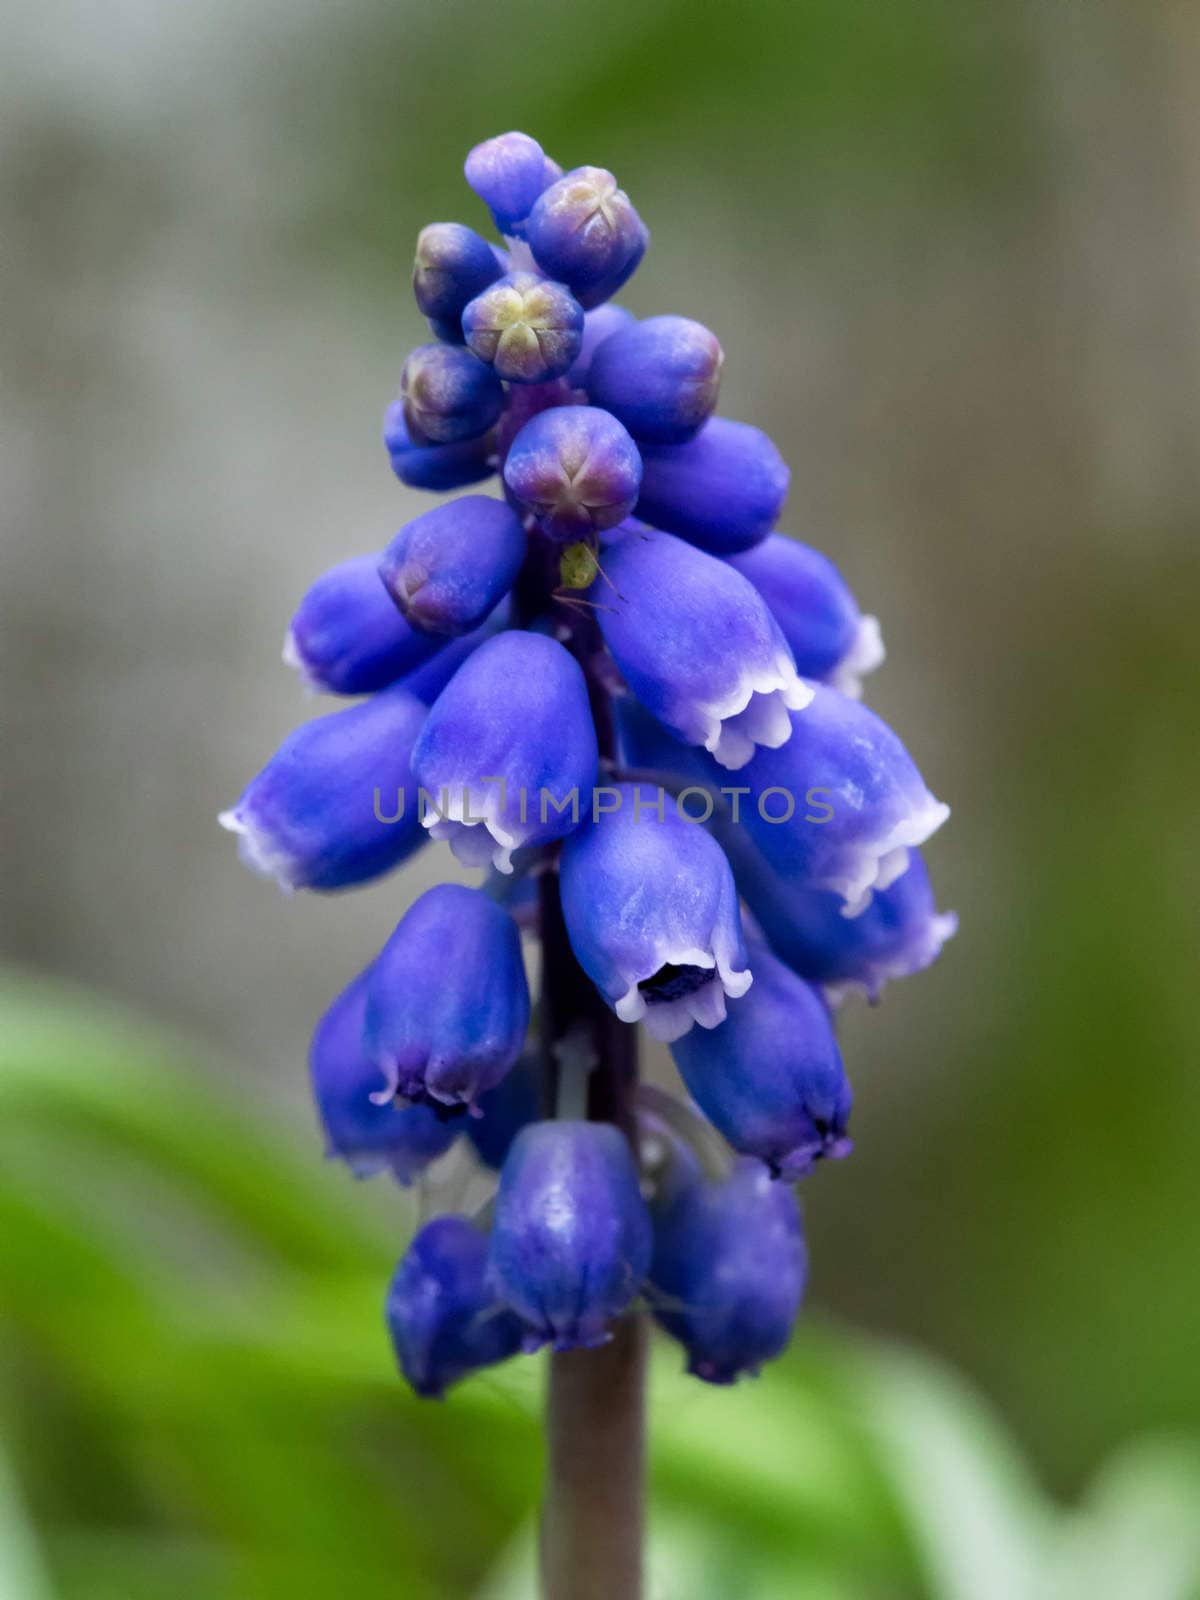 Muscari - Blue Grape Hyacinth Close-up by mroz